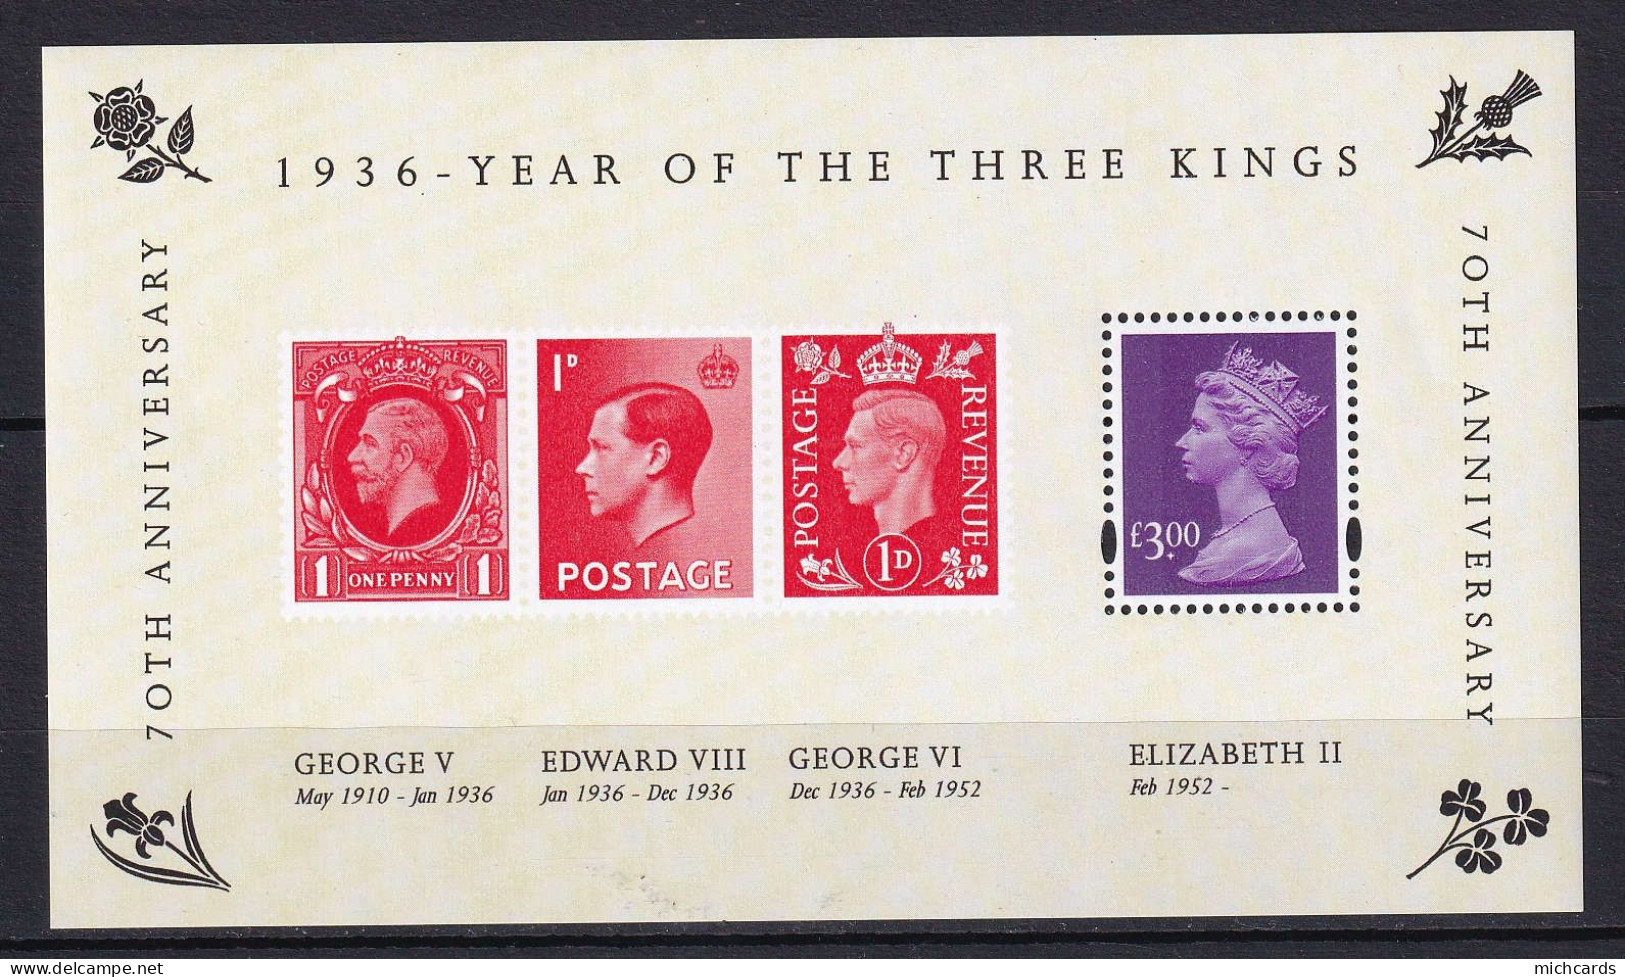 194 GRANDE BRETAGNE 2006 - Y&T BF 39 - Annee Des 3 Rois Reine Elizabeth II - Neuf ** (MNH) Sans Charniere - Unused Stamps